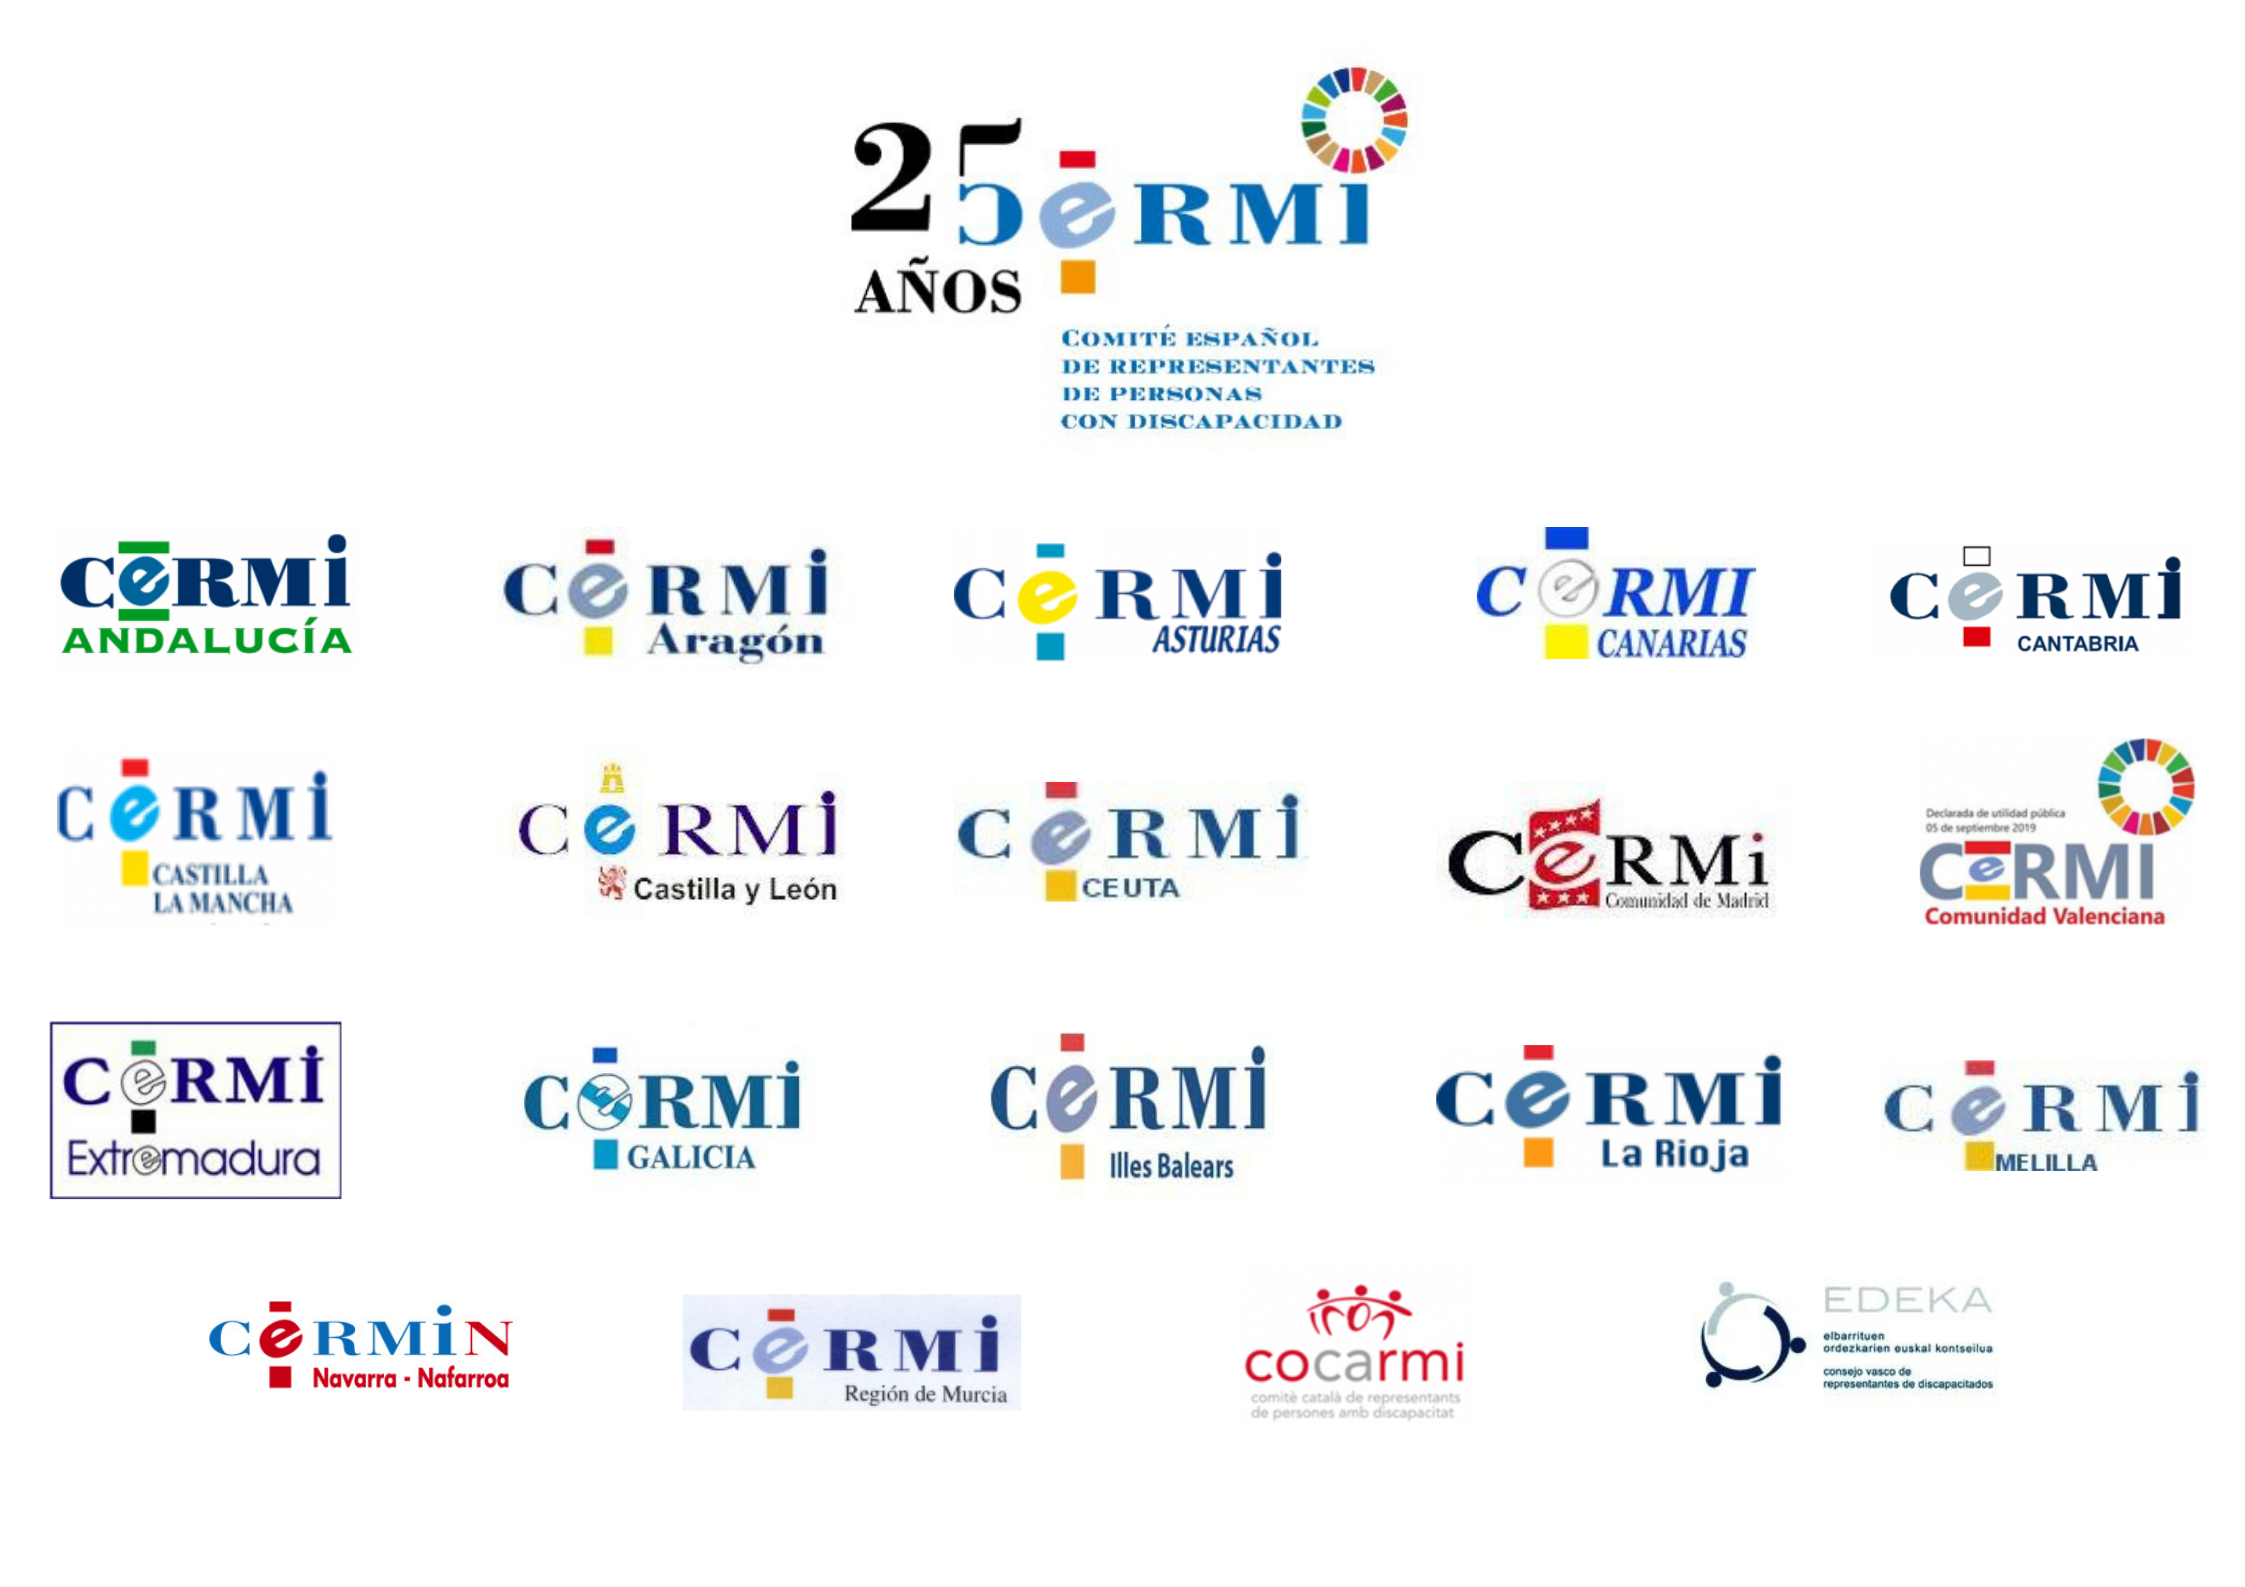 Cartel con los logos de los 19 Cermis Autonómicos y del Cermi Estatal.